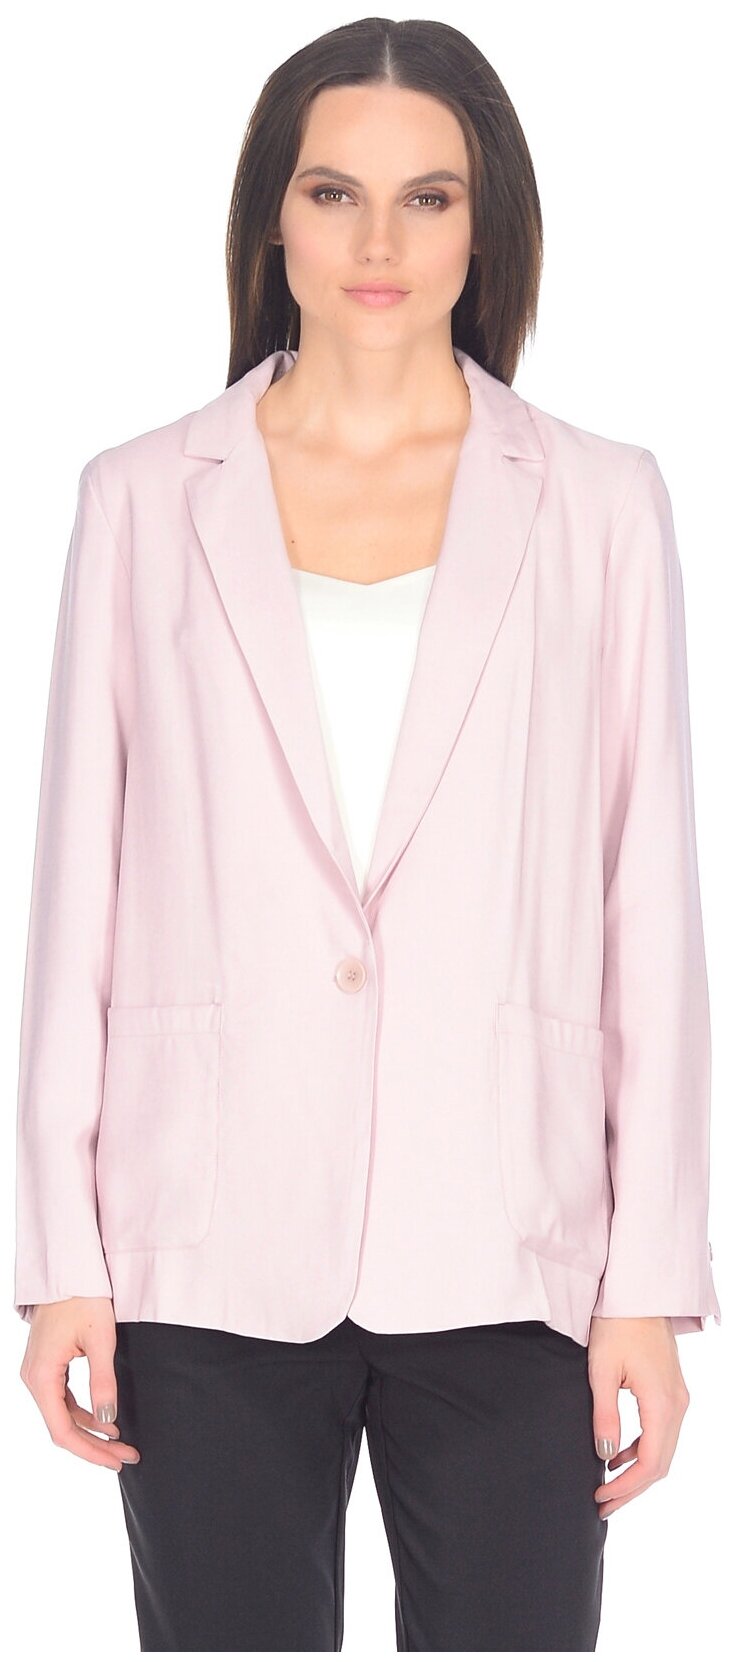 Жакет baon Прямой жакет с карманами Baon размер: L розовый